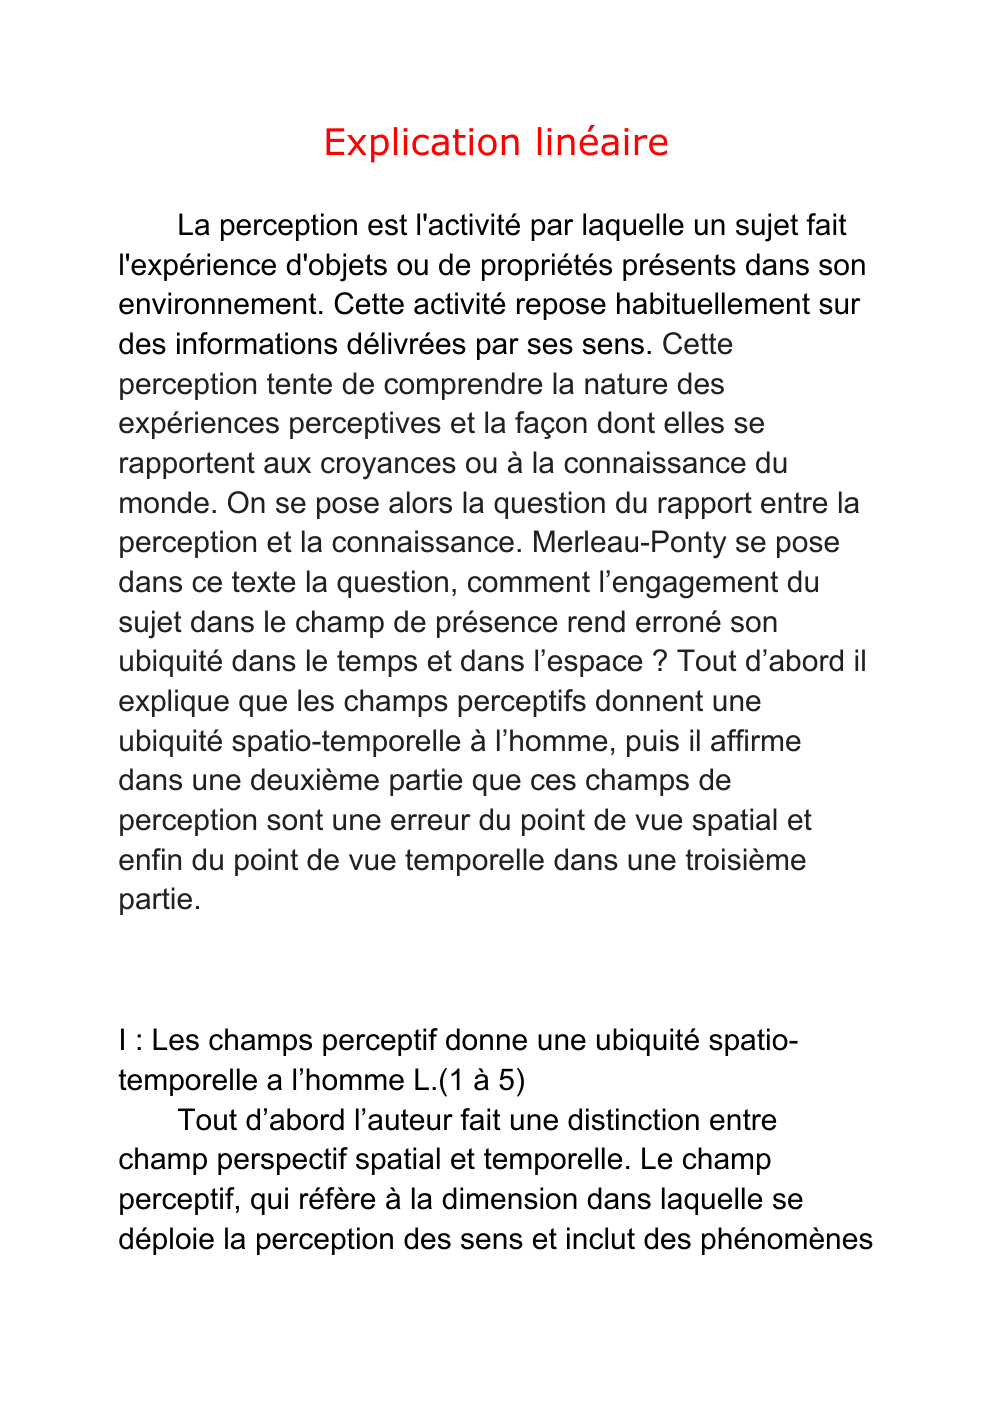 Prévisualisation du document explication linéaire Merleau ponty: Les champs perceptif donne une ubiquité spatiotemporelle a l’homme